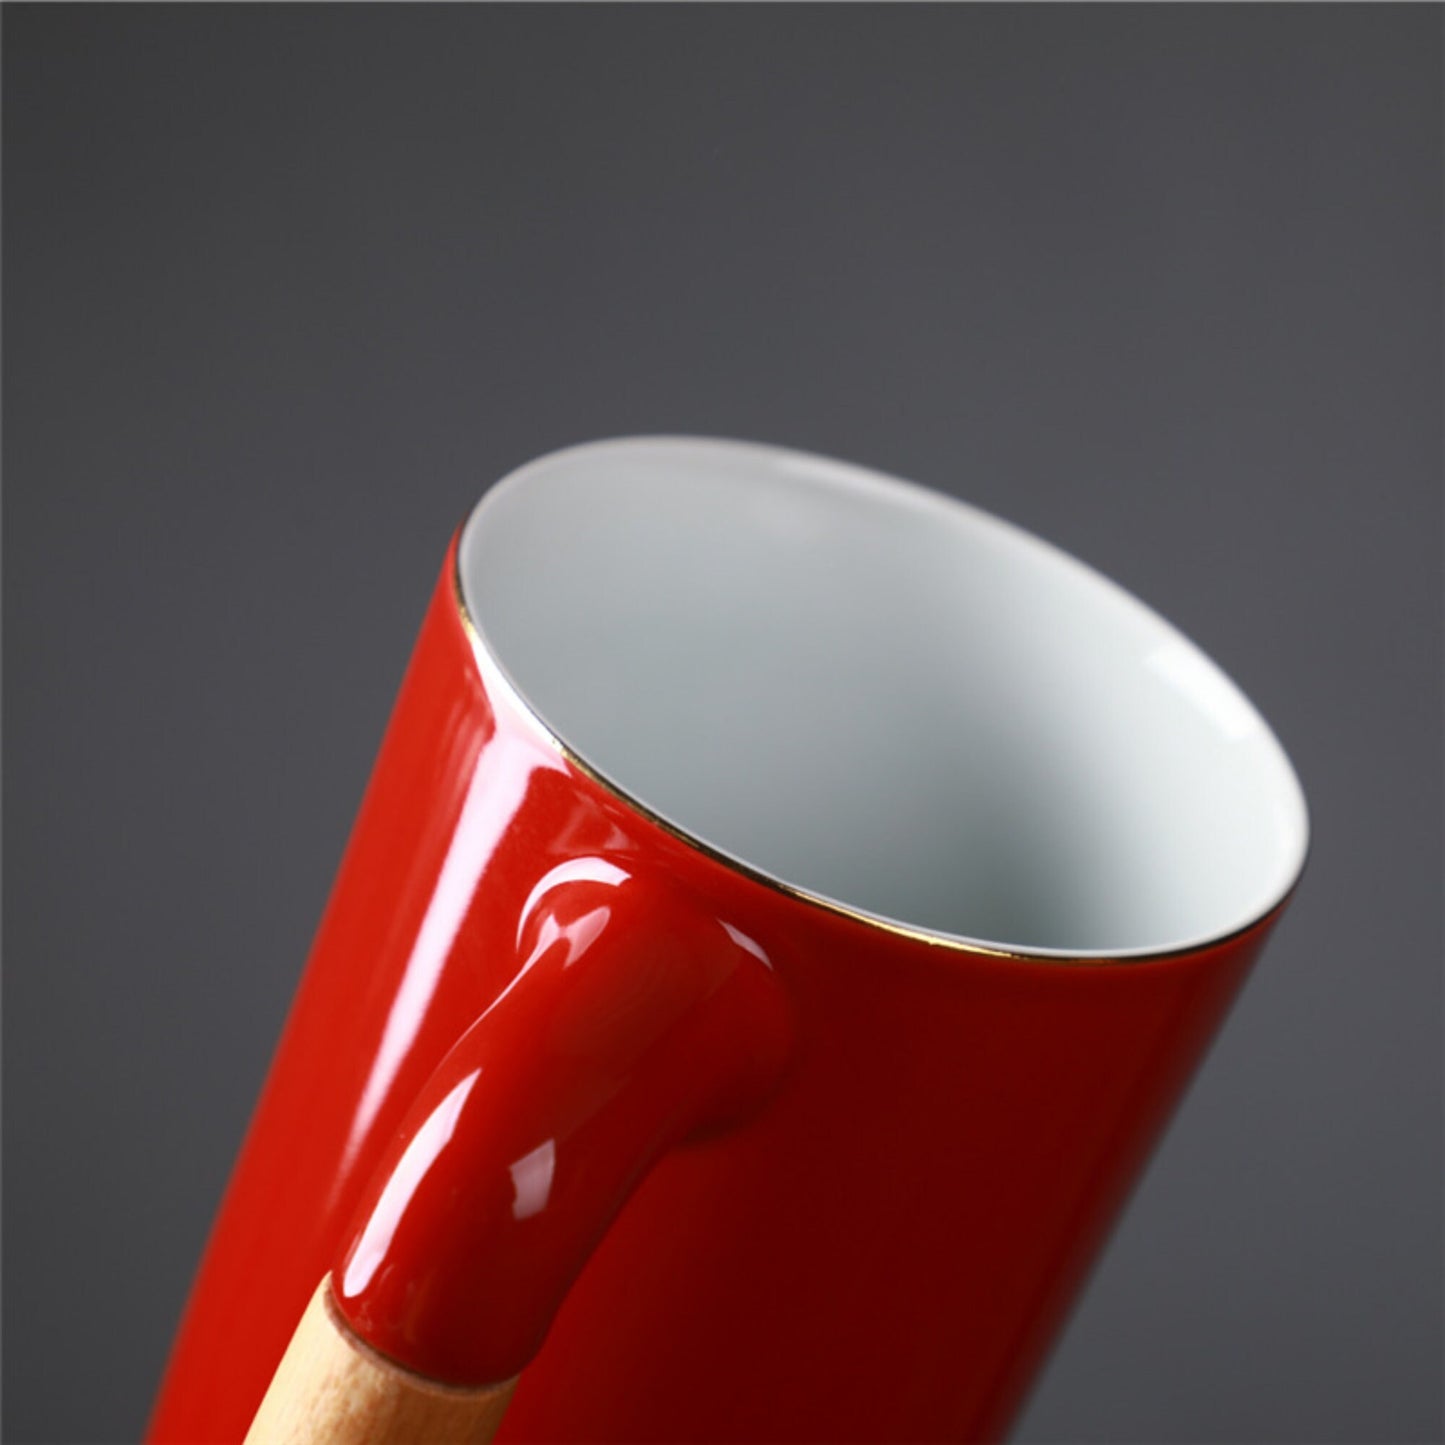 مج ياباني 2×1 سيراميك بالغطاء والمصفاة | كوب سيراميك حديث، كوب قهوة صغير، كوب فخار سيراميك صغير، كوب سيراميك بغطاء